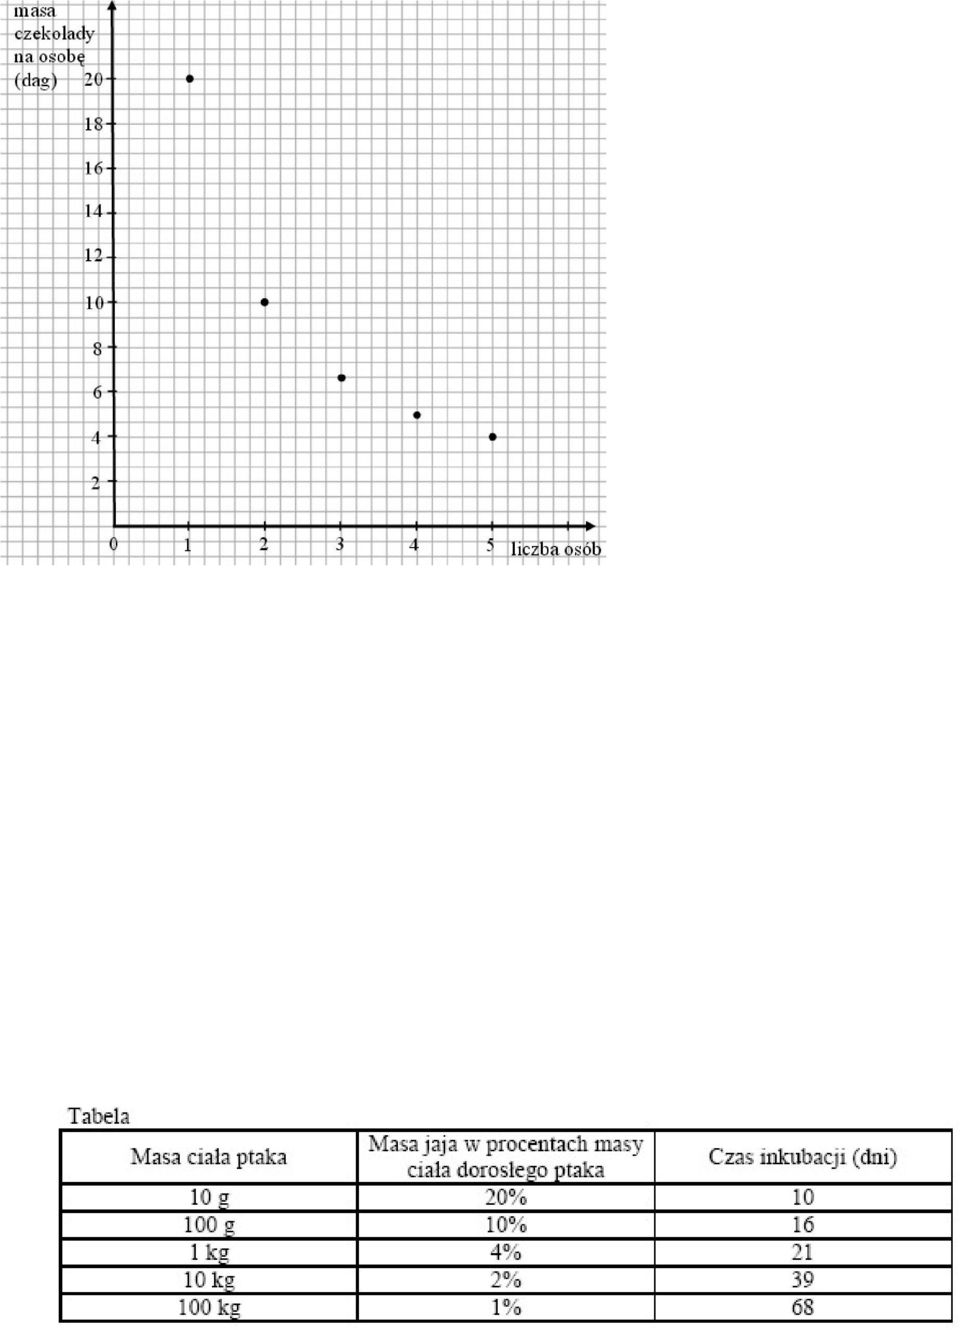 ją między siebie na równe kawałki. Wykres przedstawia zależność między masą czekolady (y) przypadającą na każdą z osób, a liczbą osób (x) dzielących tabliczkę czekolady. 28.